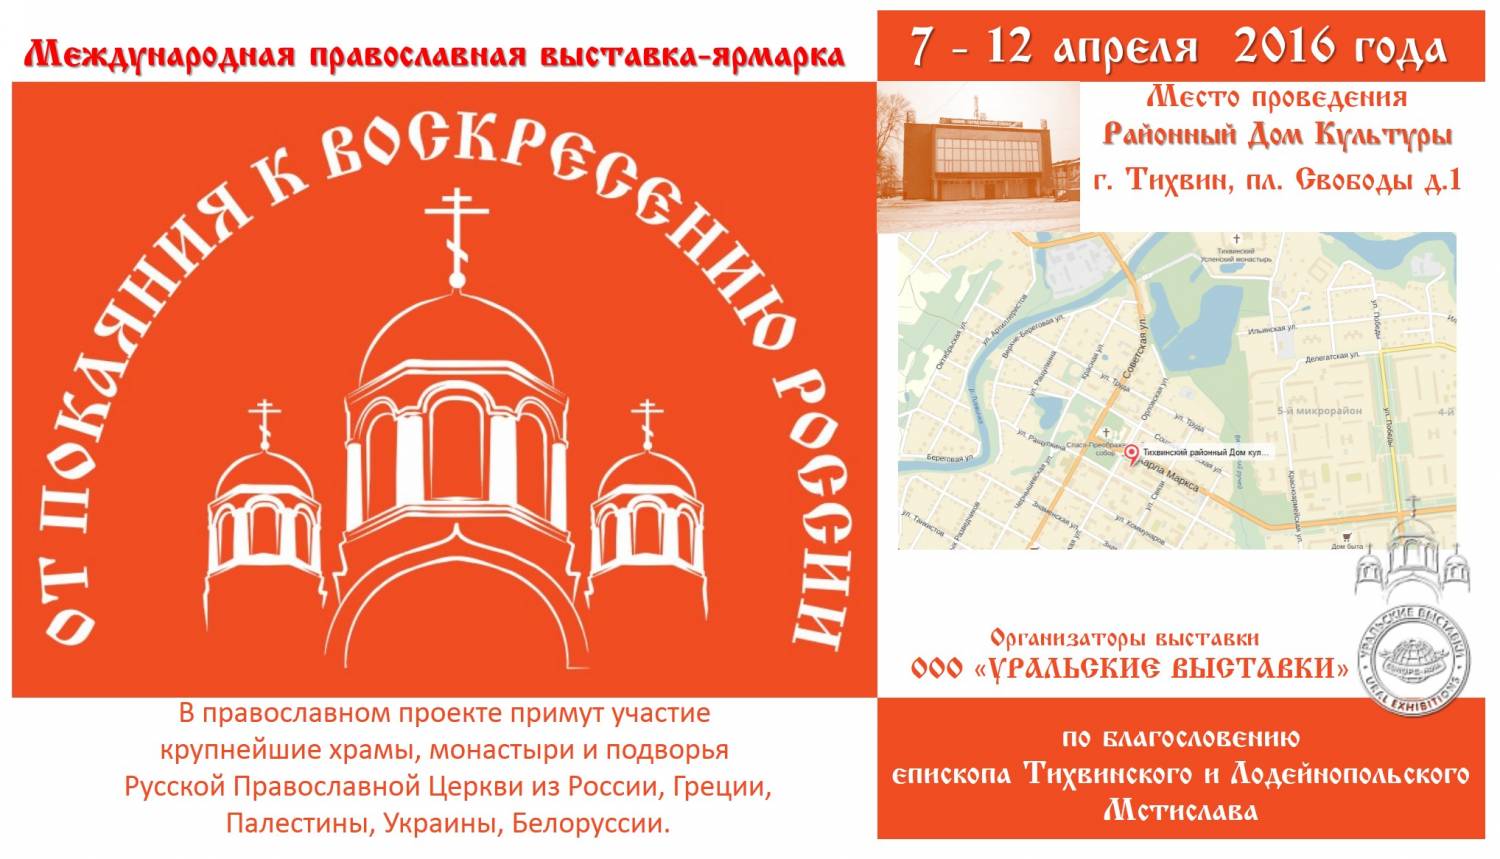 Расписание православной ярмарки в новосибирске